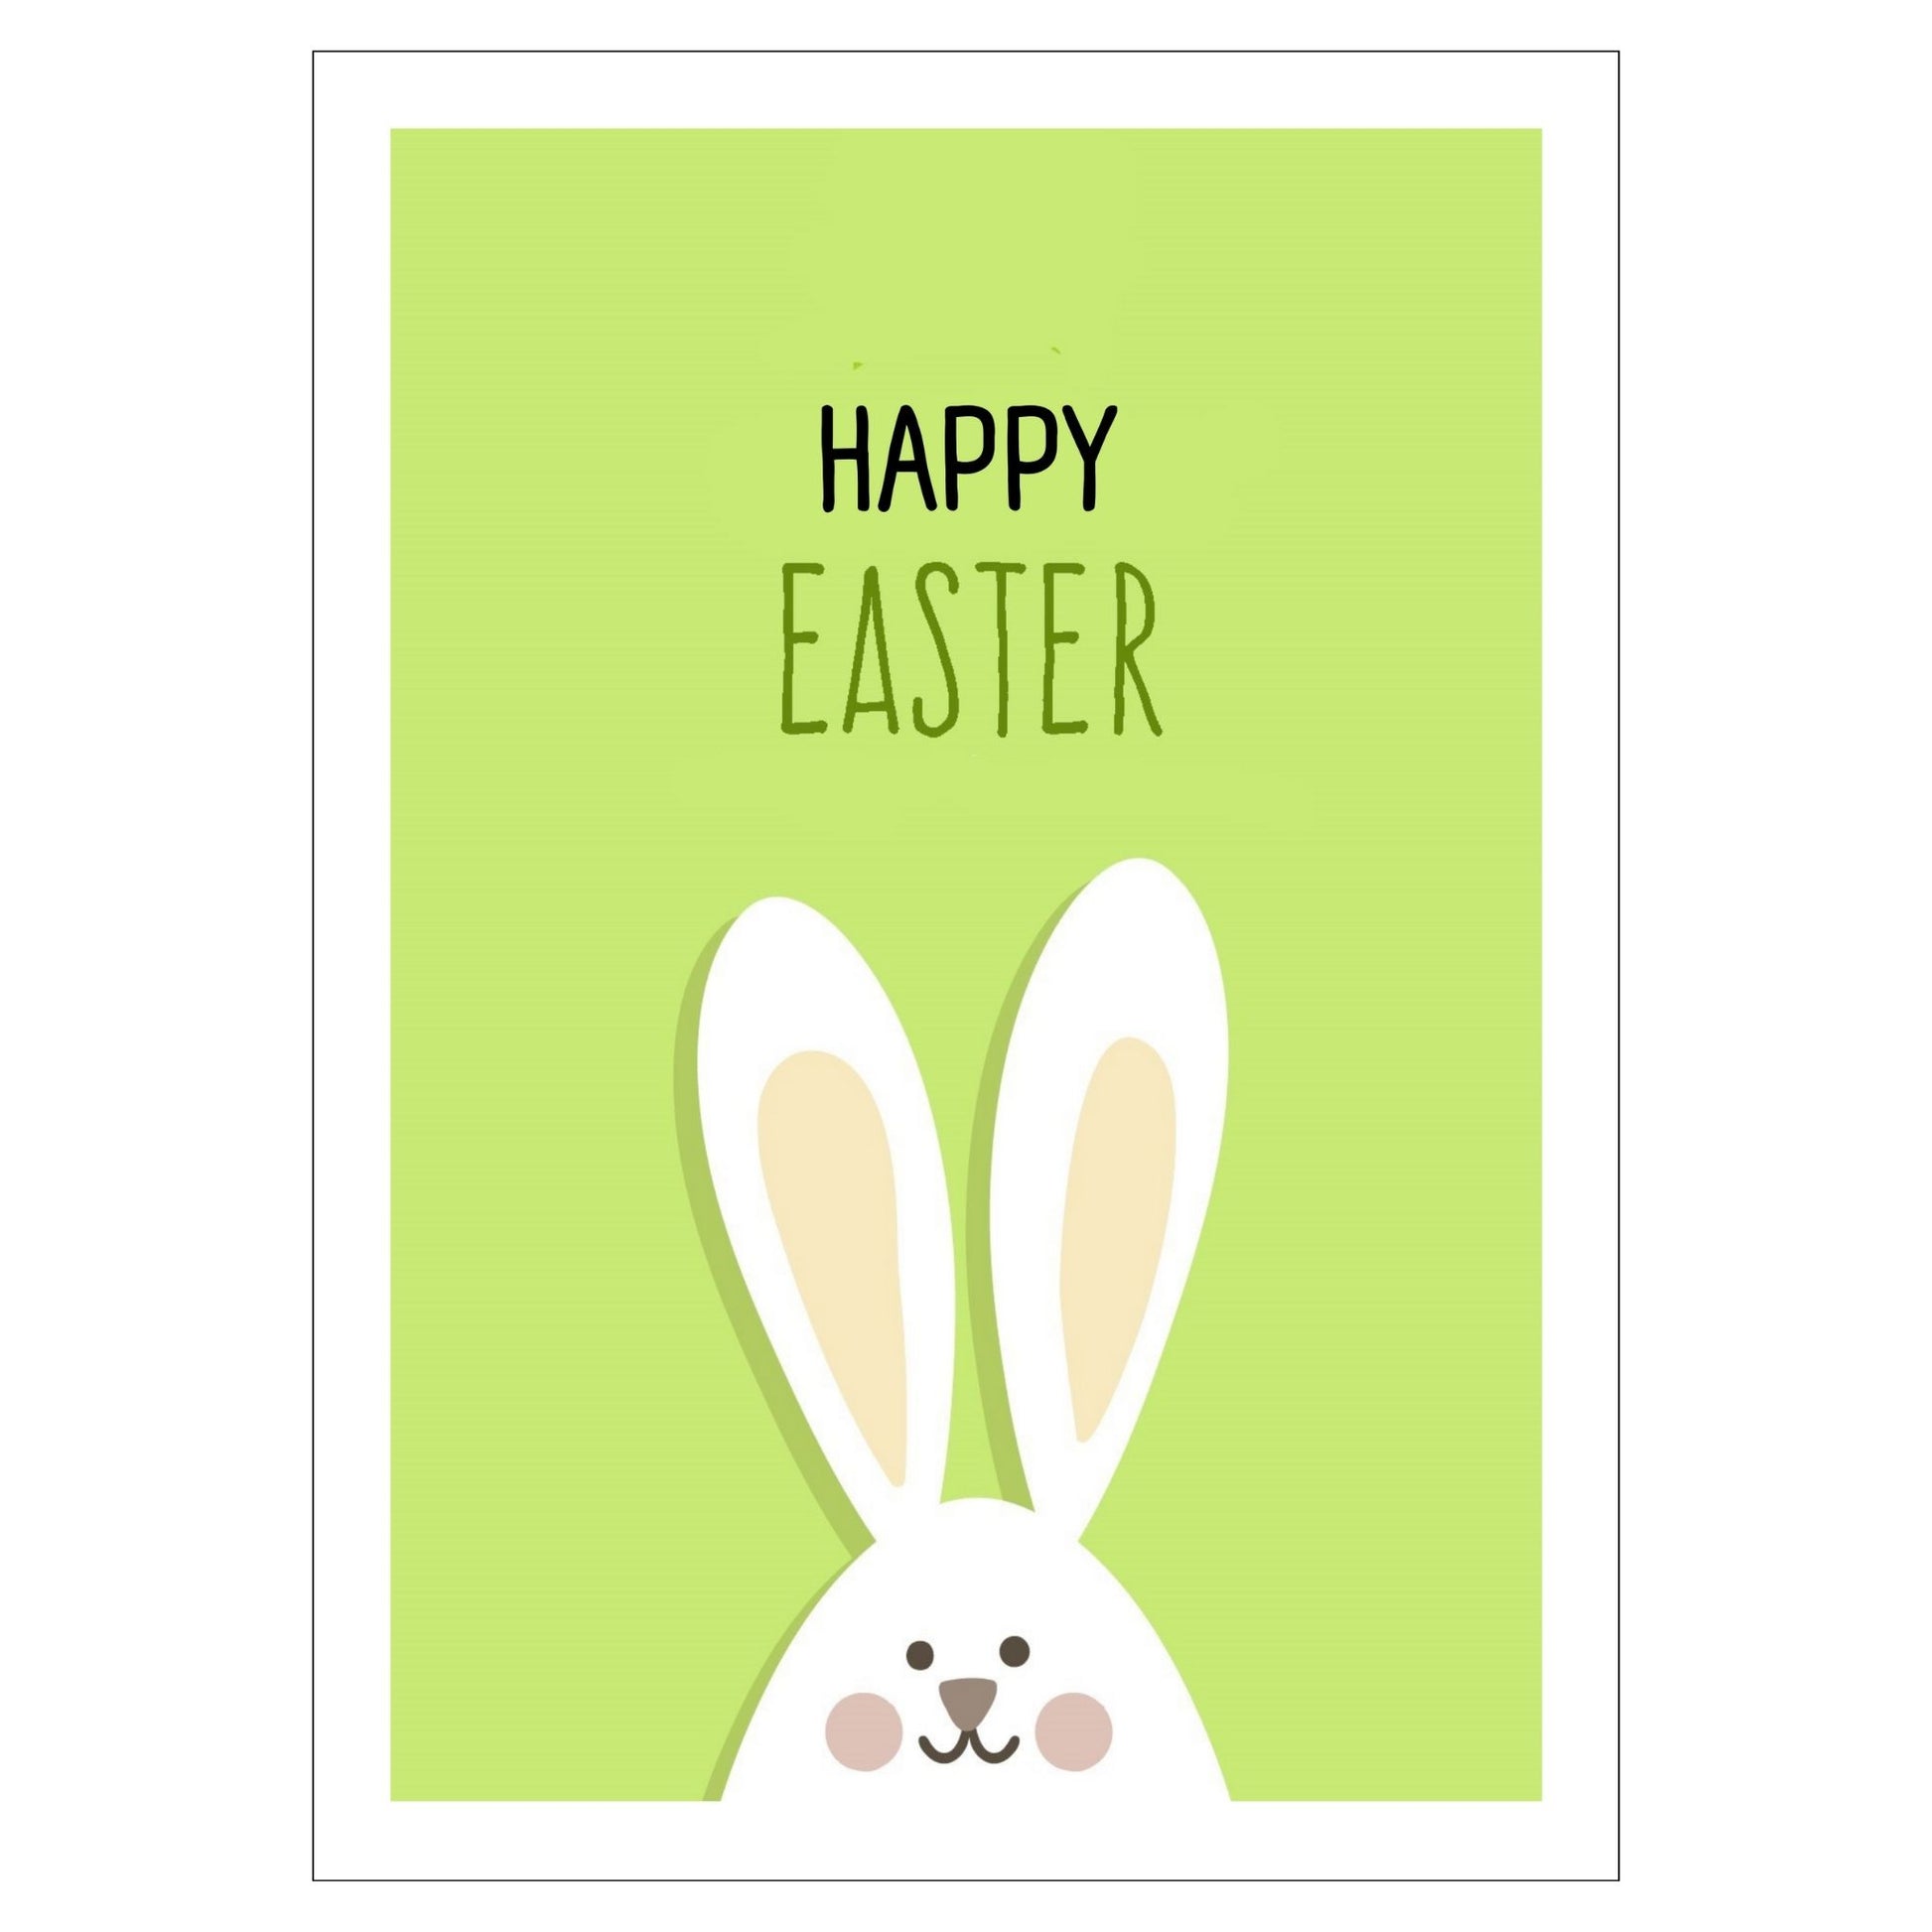 Grafisk illustrasjon som viser en hvit påskehare med en leken glimt i øyet. Haren har en myk beige kontrastfarge i ørene og på kinnene. Mot en livlig limefarget bakgrunn står teksten "Happy Easter" tydelig fremhevet i sort.